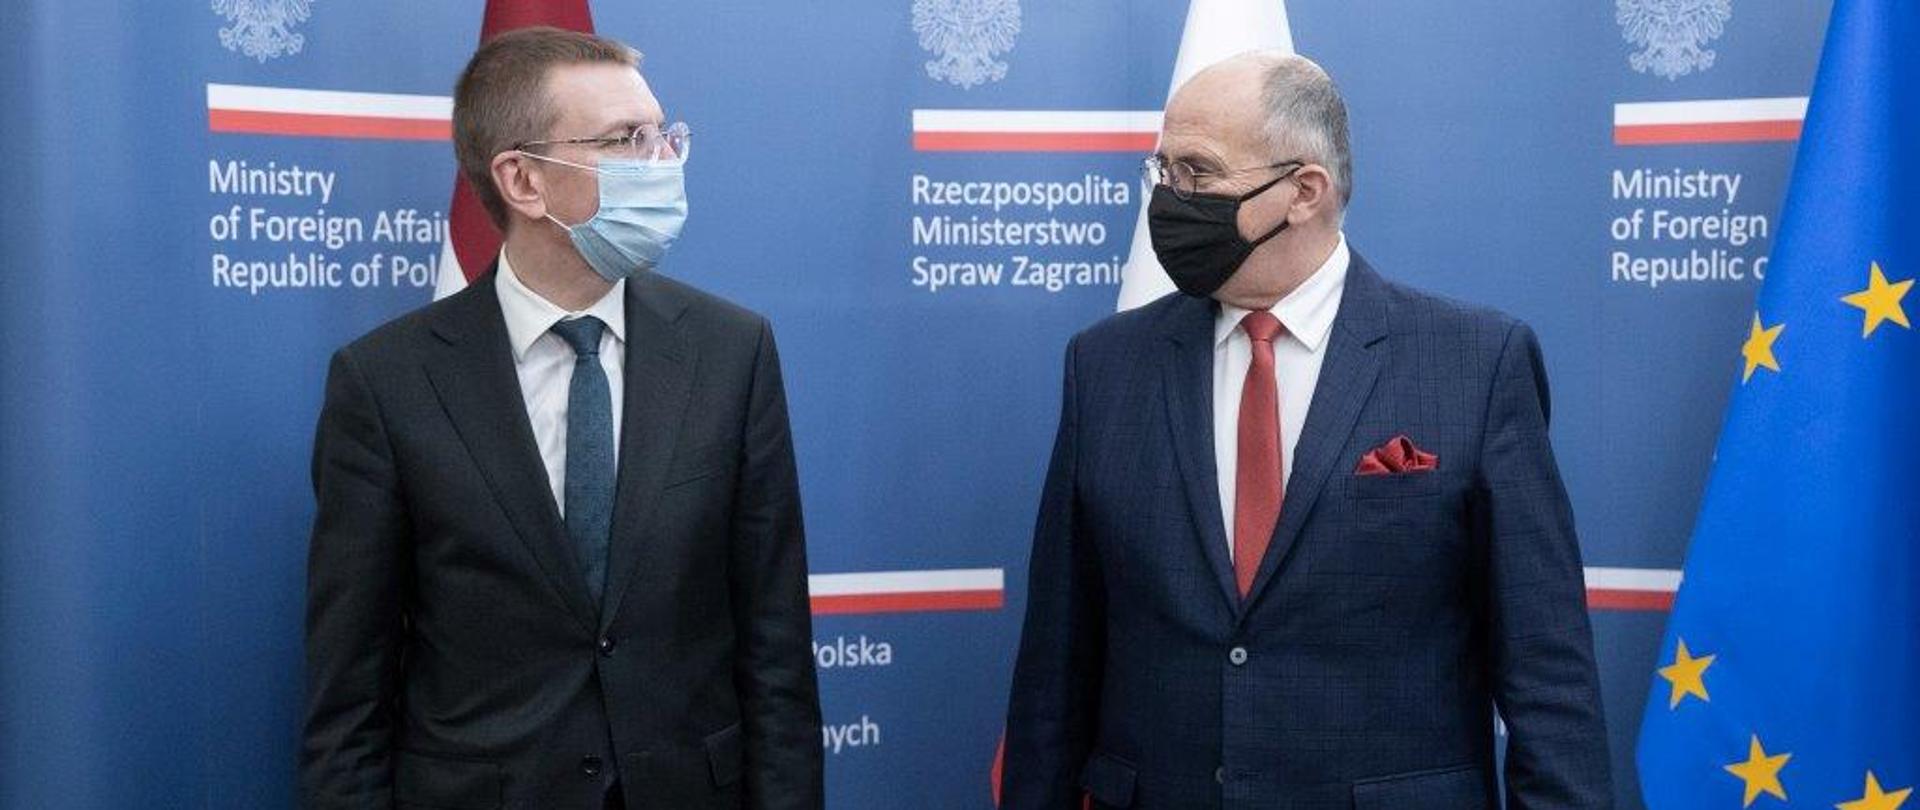 
Spotkanie szefów polskiej i łotewskiej dyplomacji
